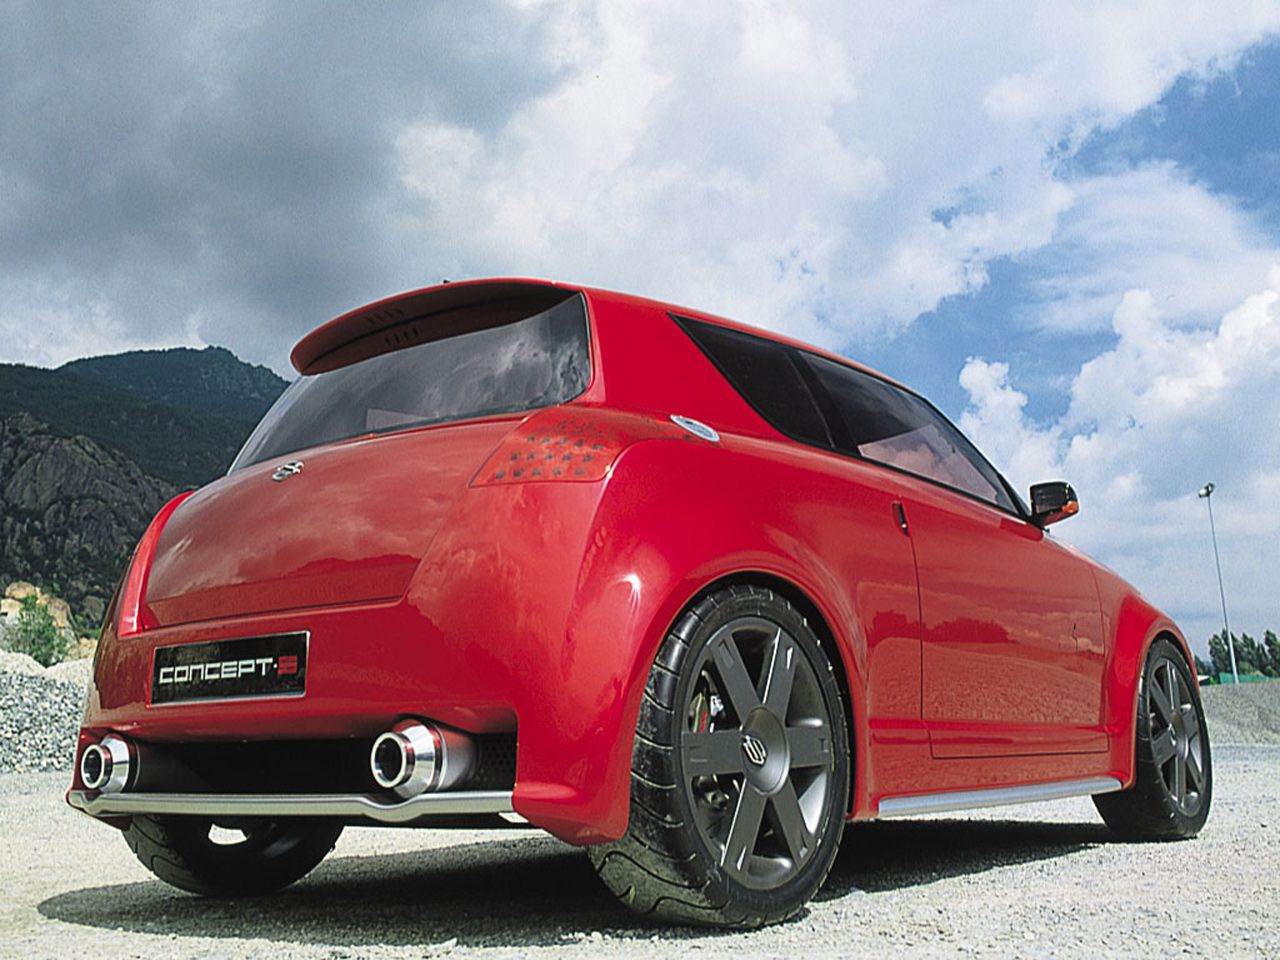 Suzuki () Concept S:  